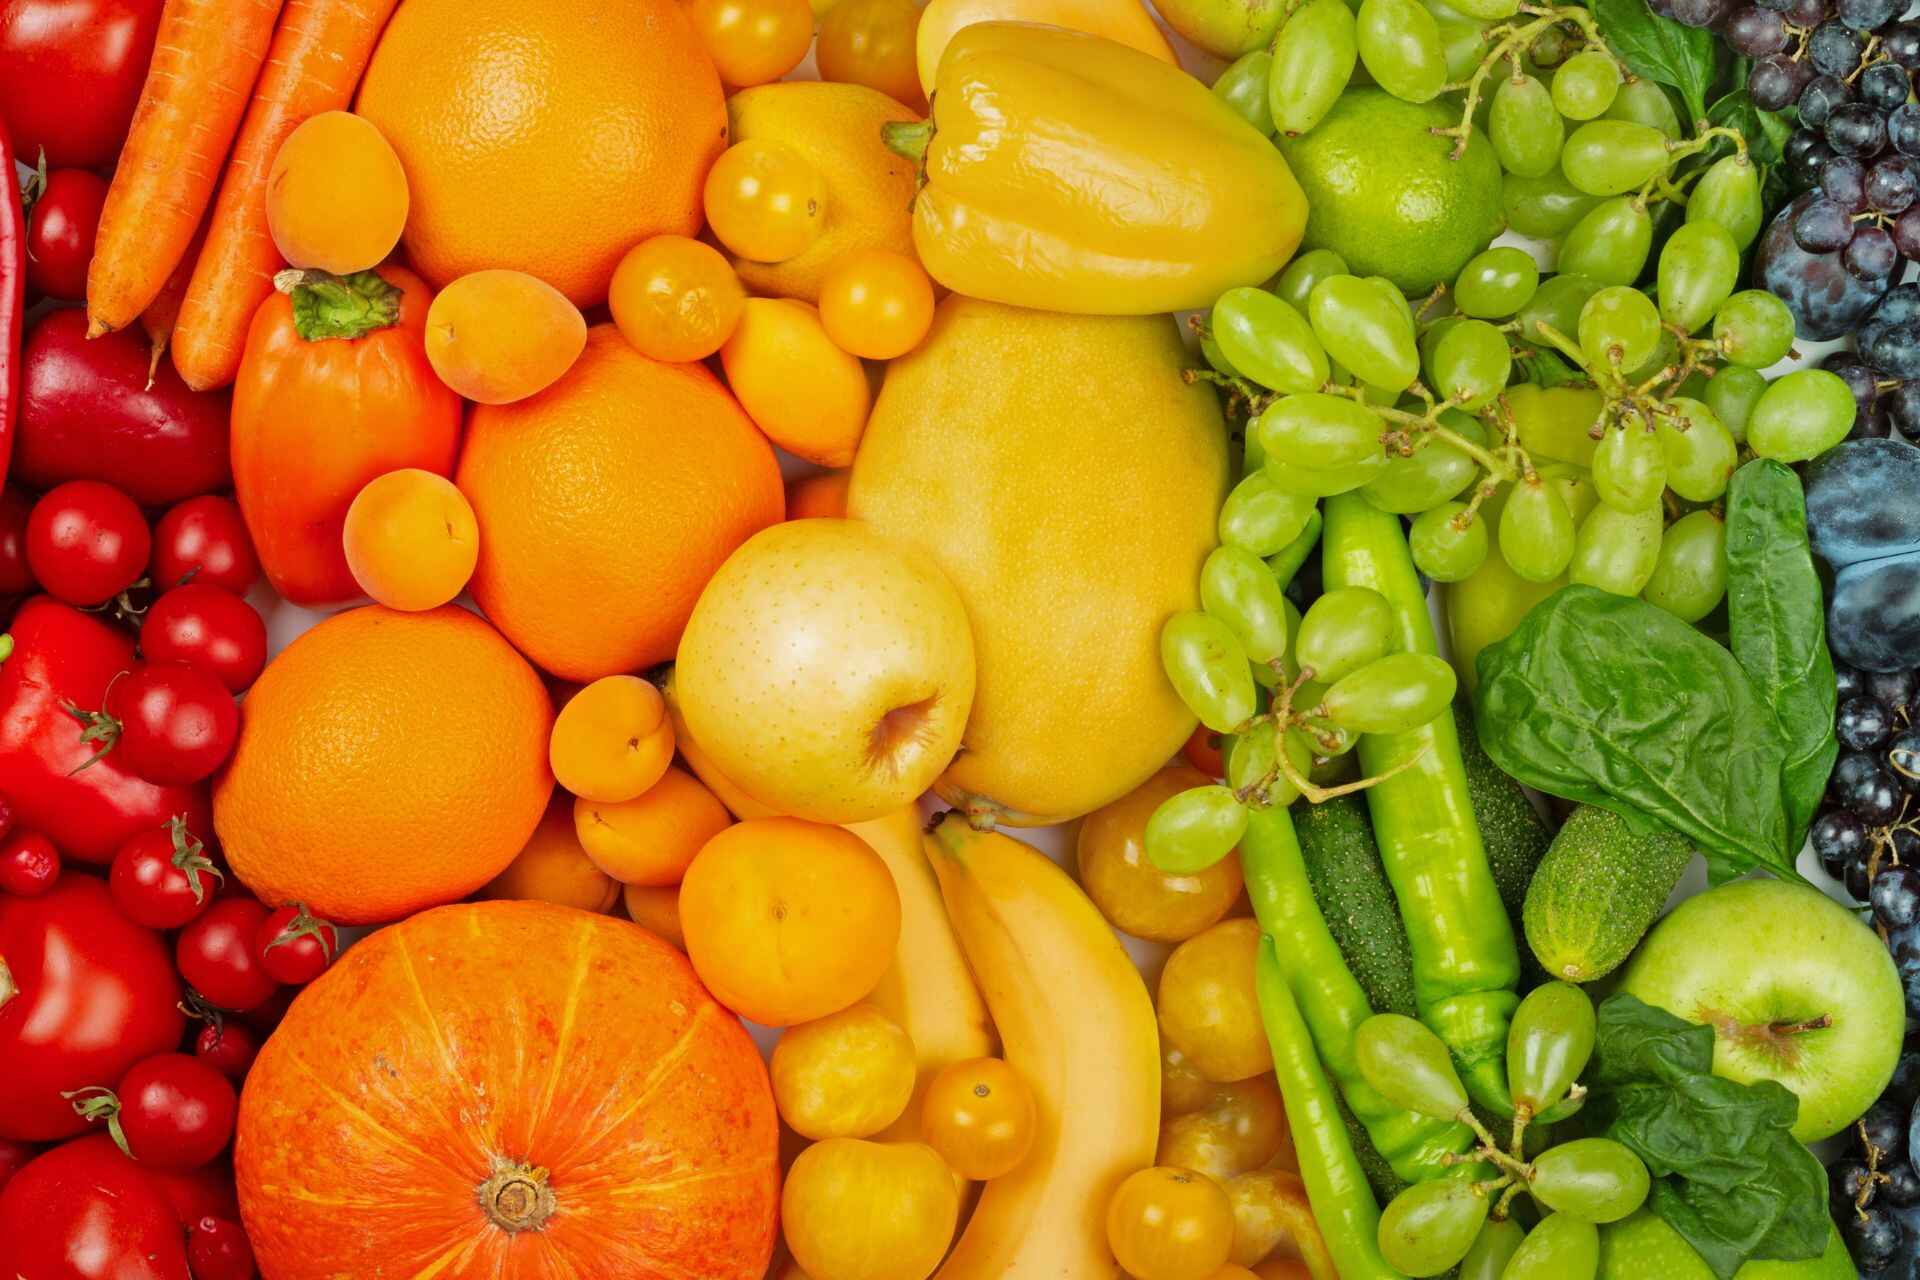 Digestione: si consiglia di consumare maggiormente frutta e verdura nel periodo estivo